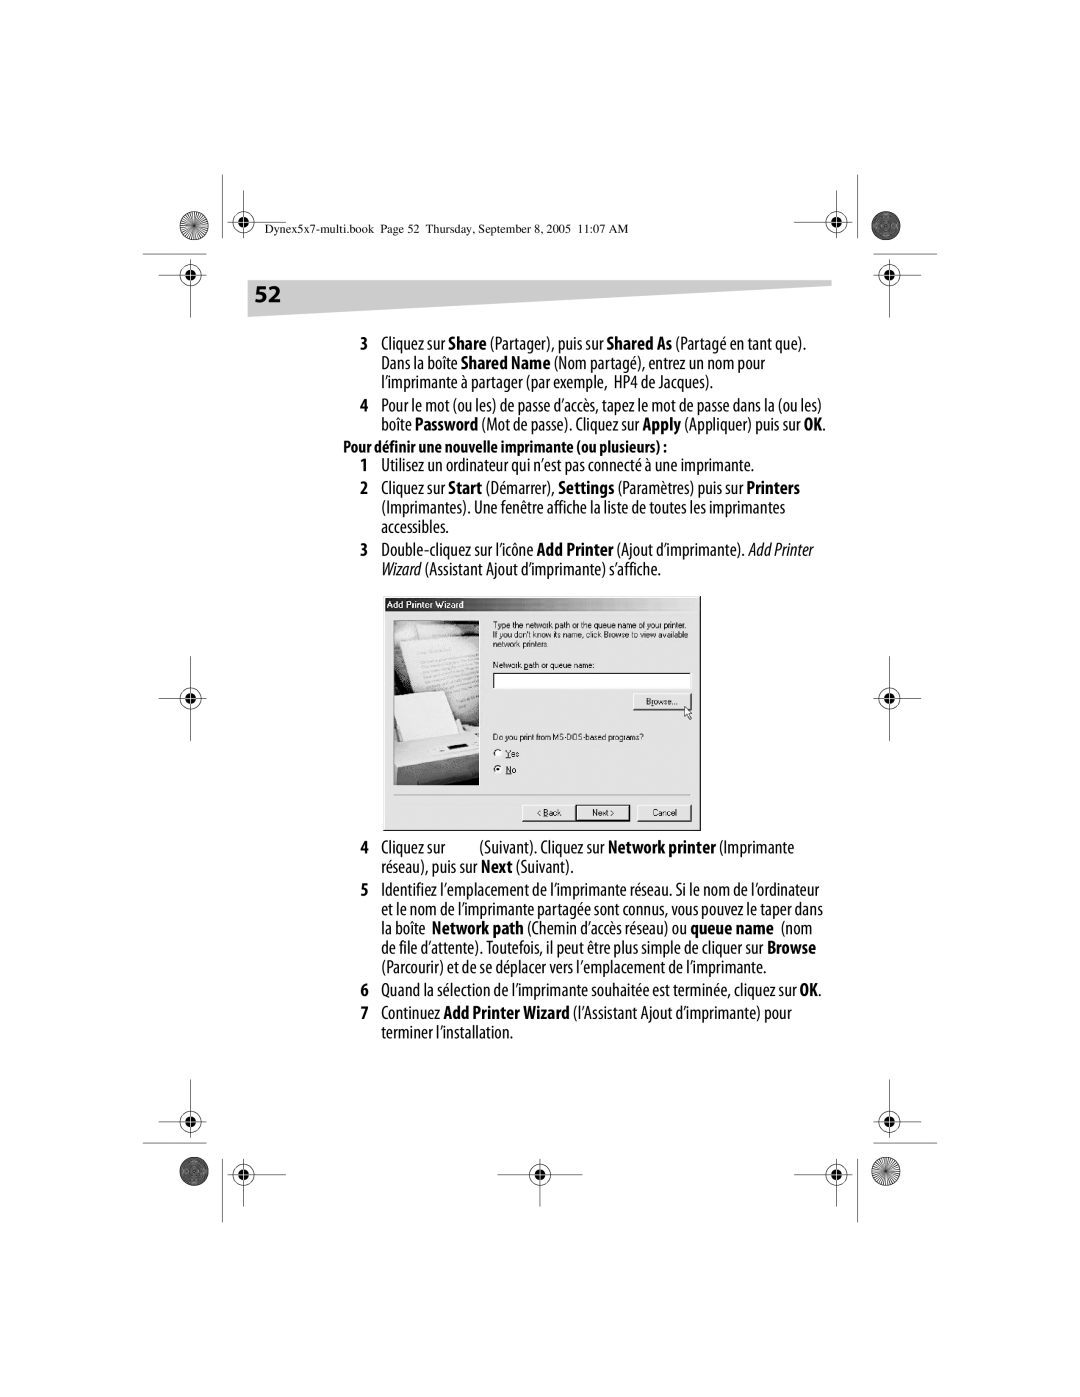 Dynex DX-E201 manual Utilisez un ordinateur qui n’est pas connecté à une imprimante 